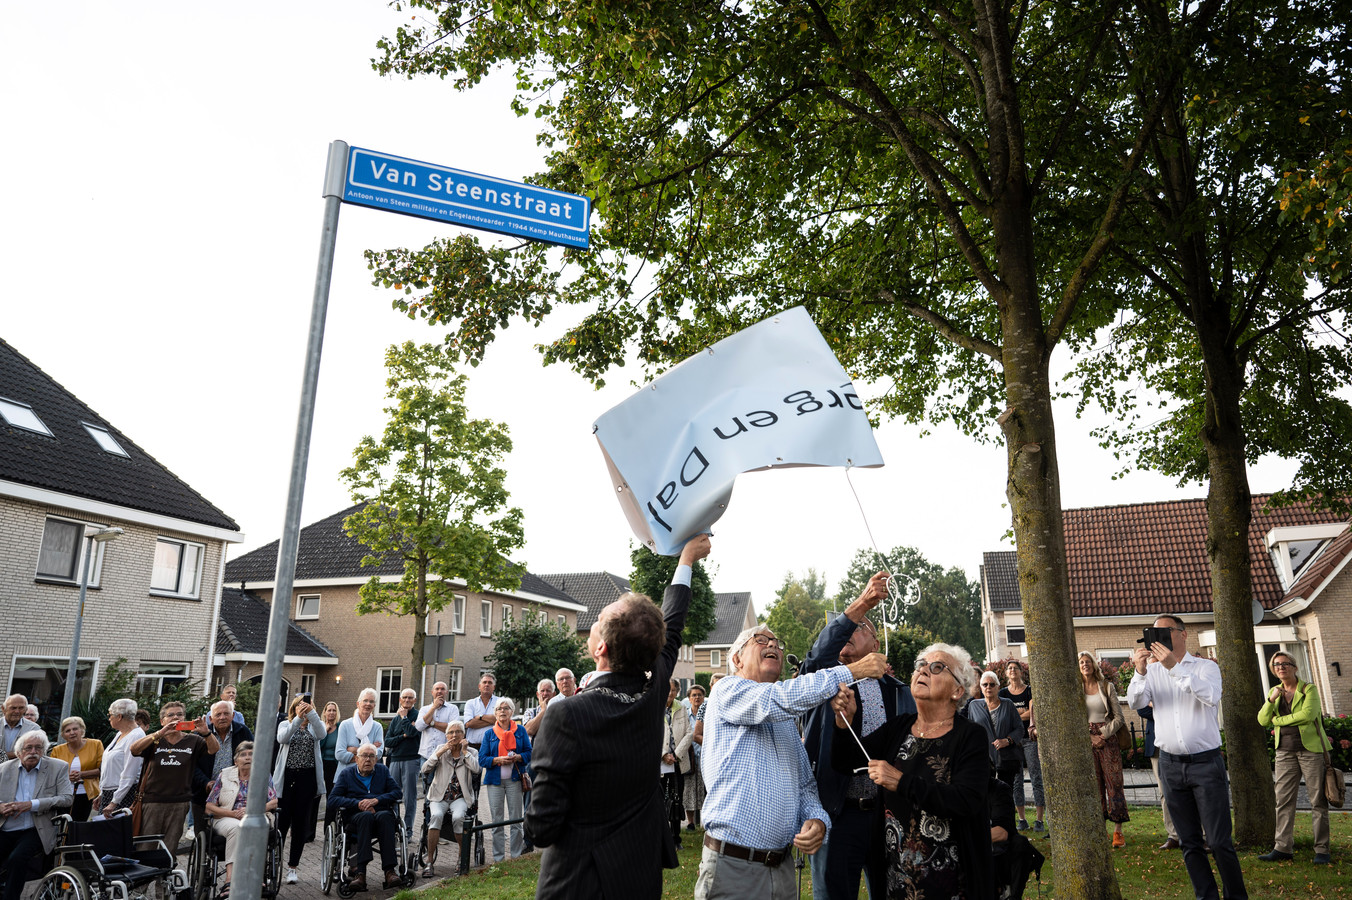 De onthulling van het bord van de Van Steenstraat, vernoemd naar militair en verzetsstrijder Antoon van Steen.